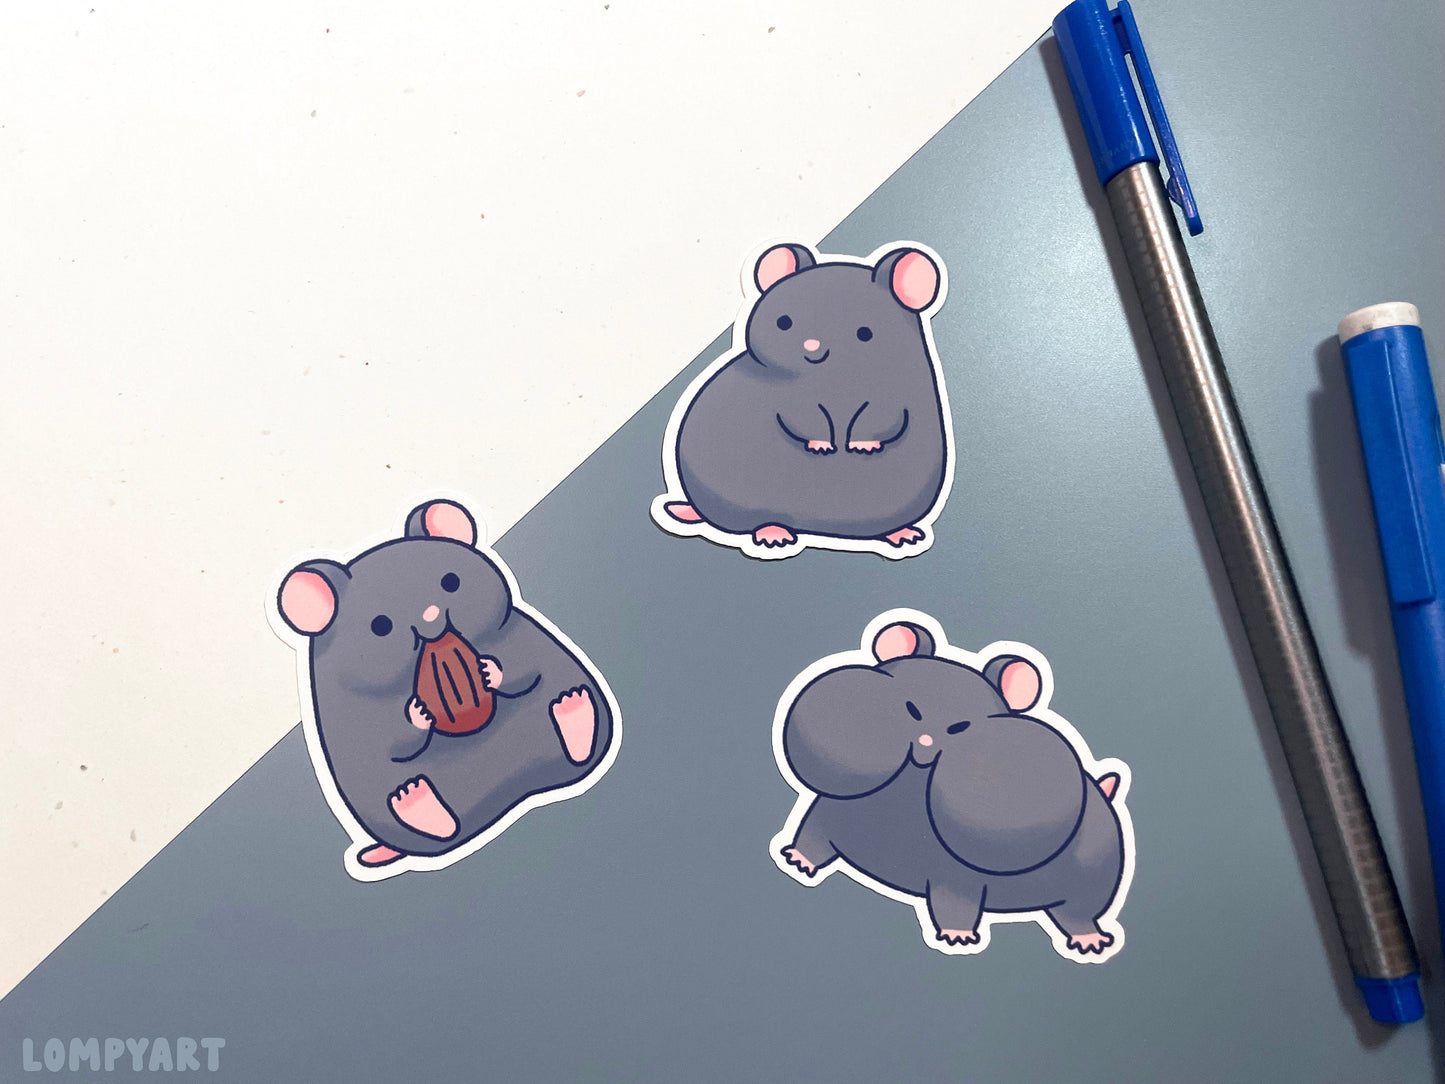 Hamster Sticker Set Custom (choose your hamster color!)